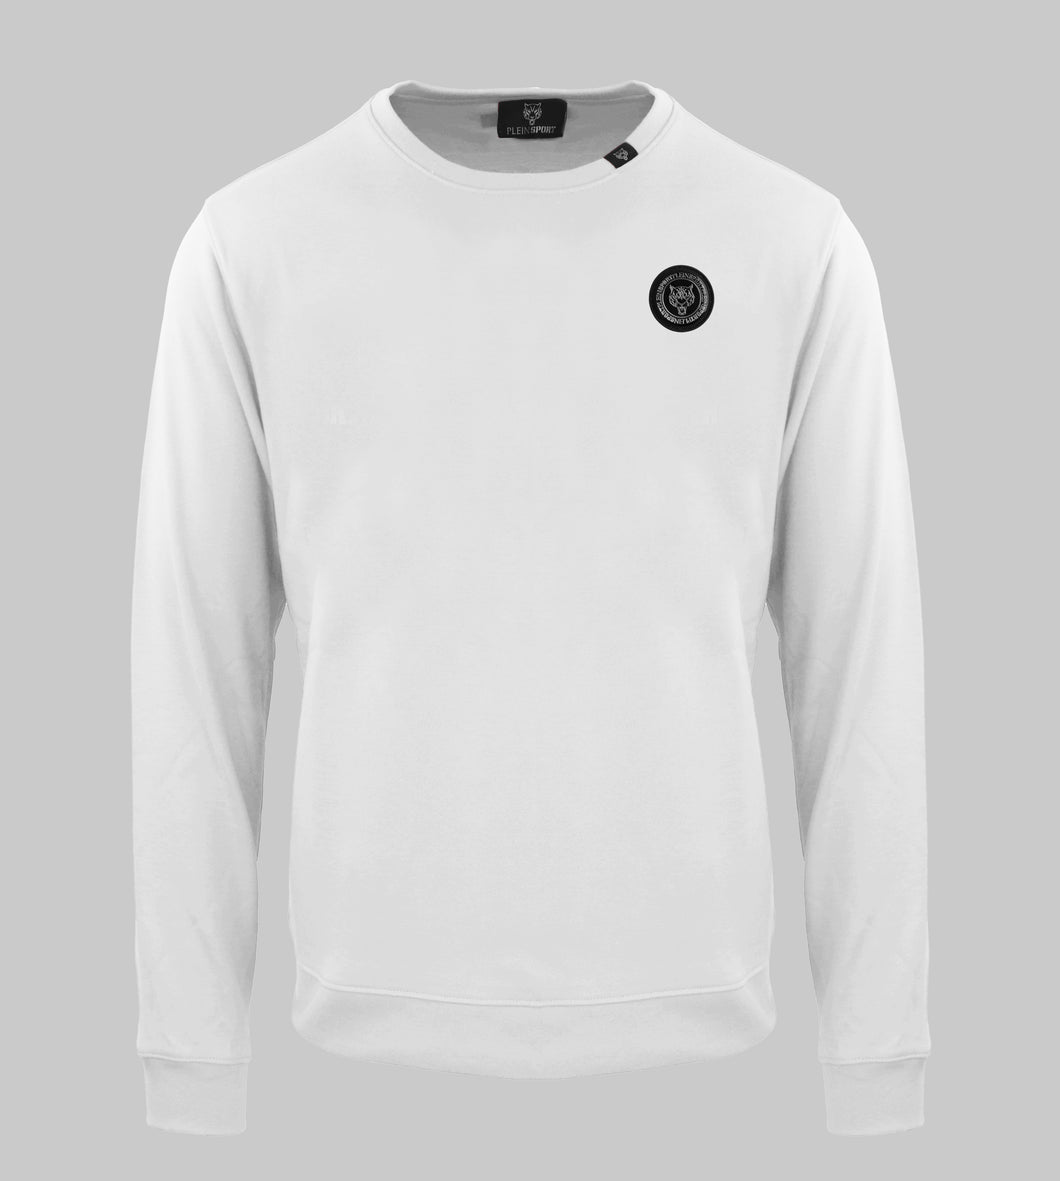 Plein Sport,  Logo Patch White Sweatshirt